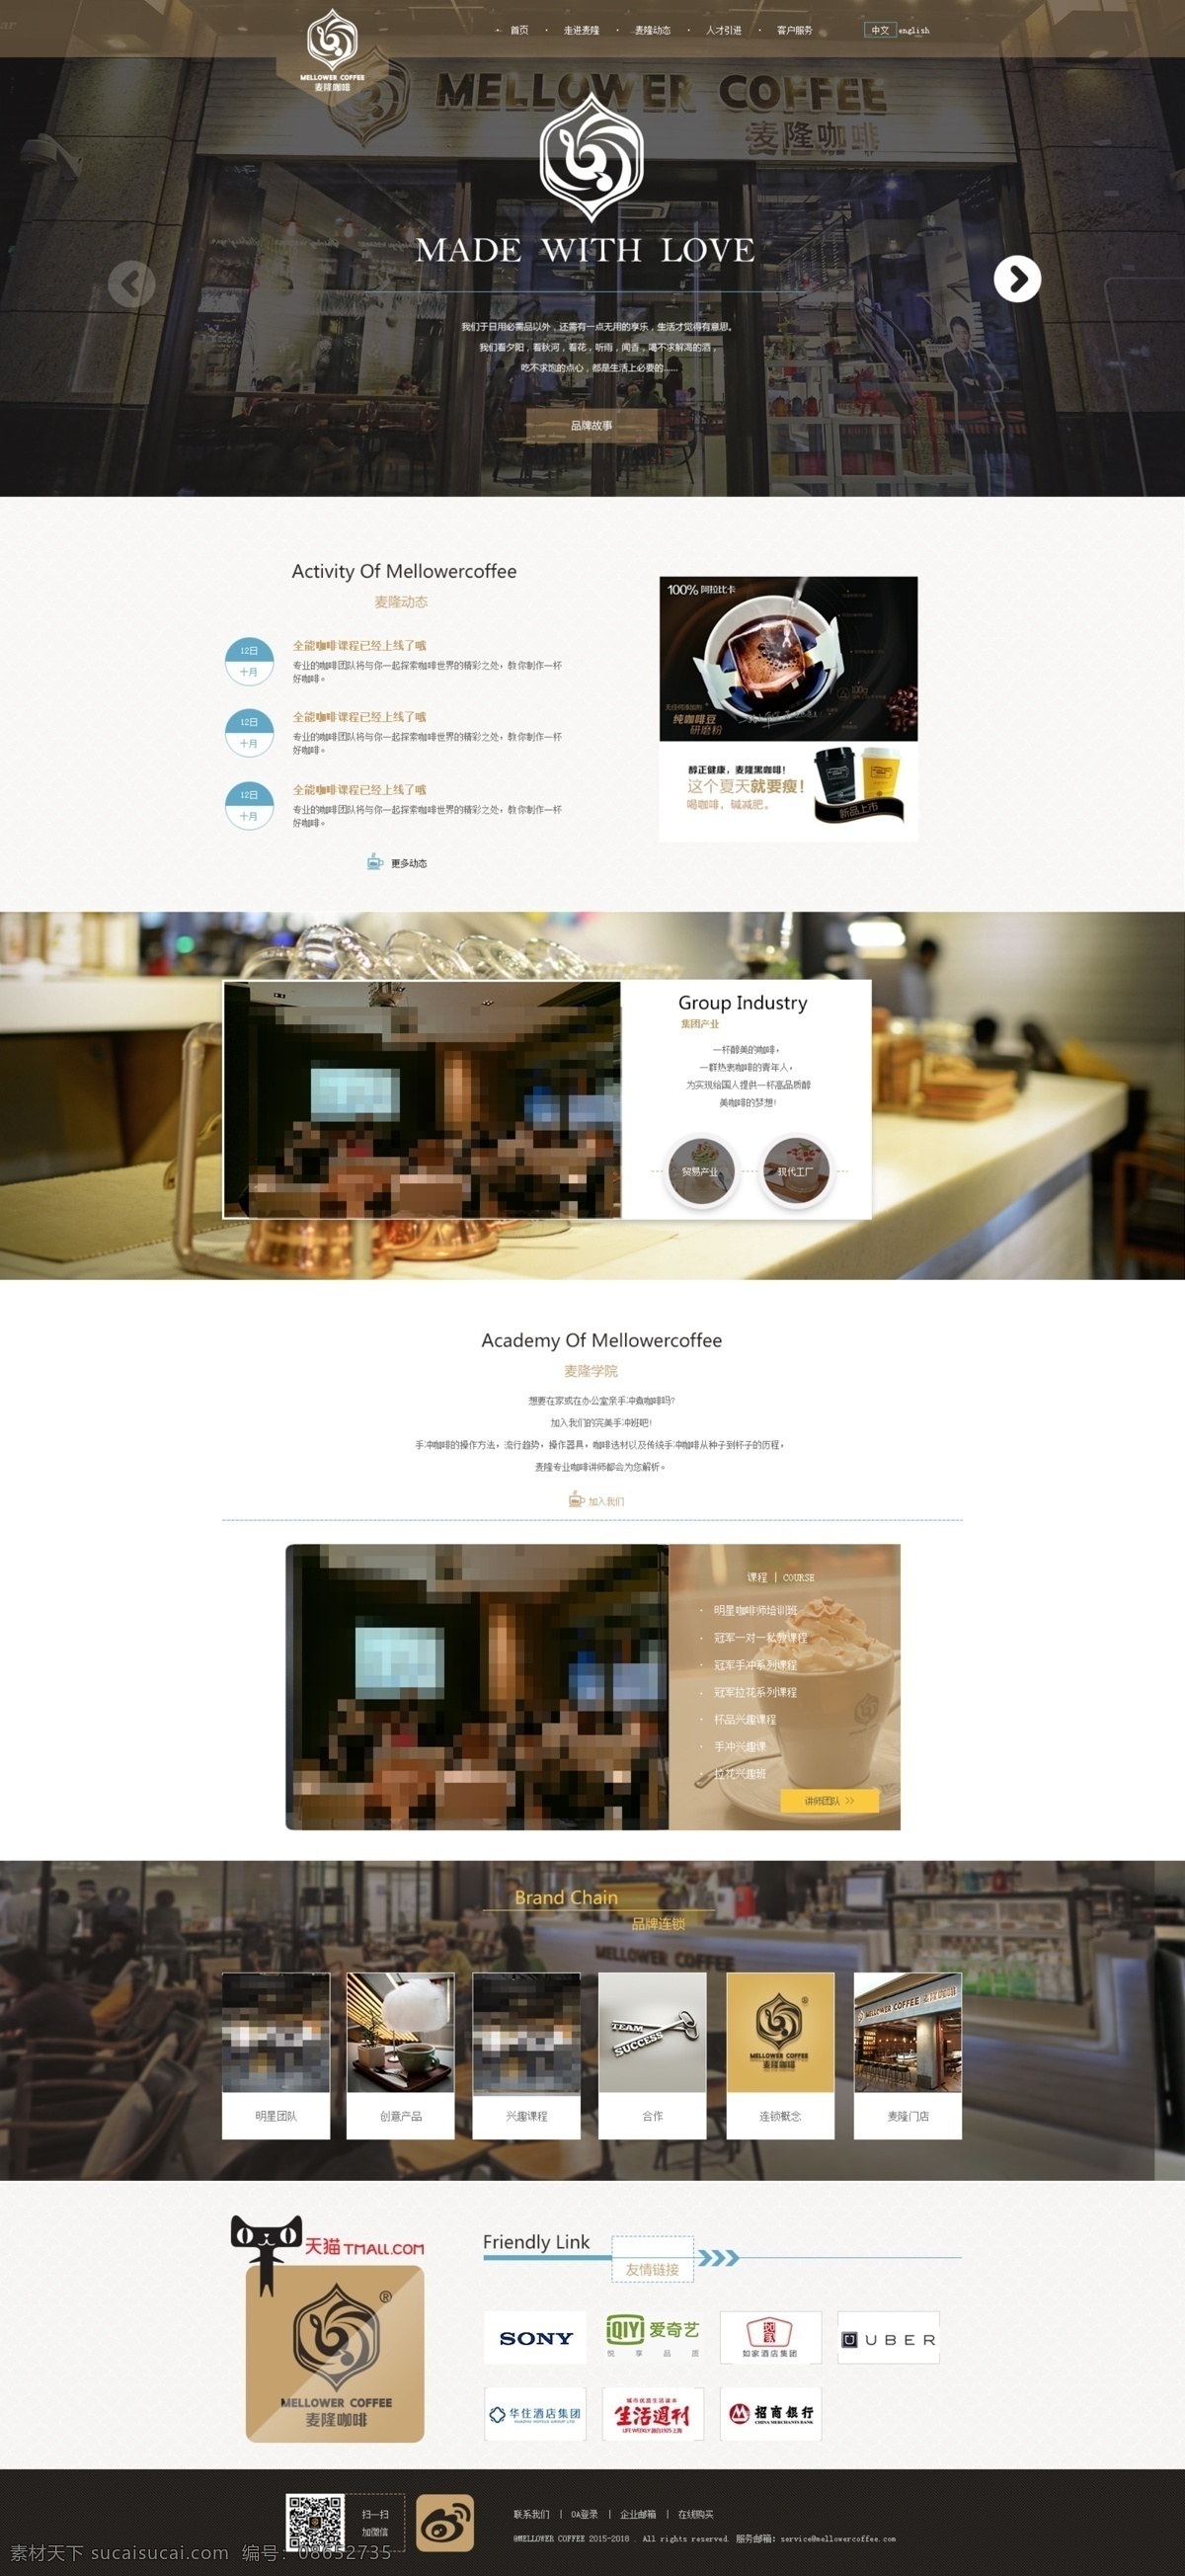 高档 咖啡 网站设计 网页设计 食品网页 咖啡网页 欧式网页 古朴大气 白色